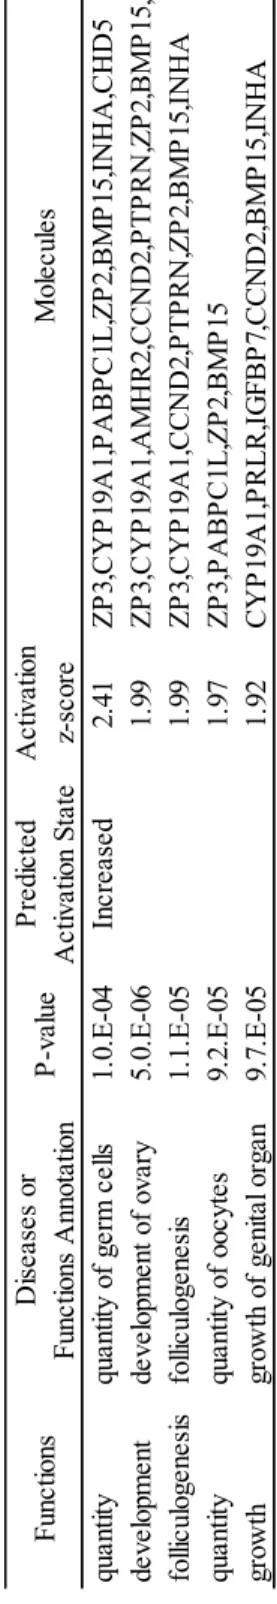 Table 6.IPA解析によって予測されたBio-function